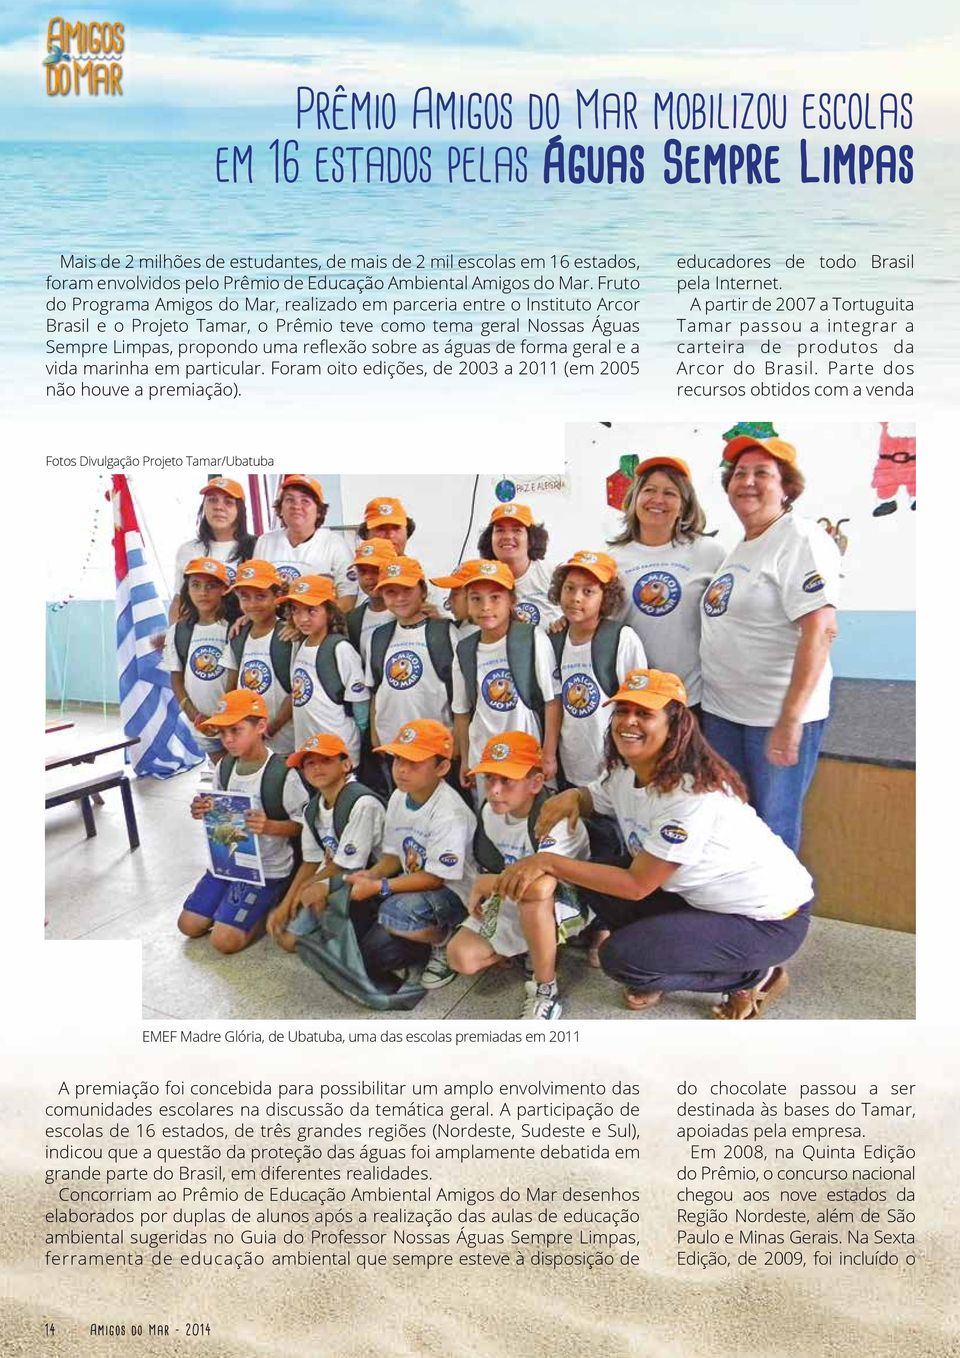 Fruto do Programa Amigos do Mar, realizado em parceria entre o Instituto Arcor Brasil e o Projeto Tamar, o Prêmio teve como tema geral Nossas Águas Sempre Limpas, propondo uma reflexão sobre as águas